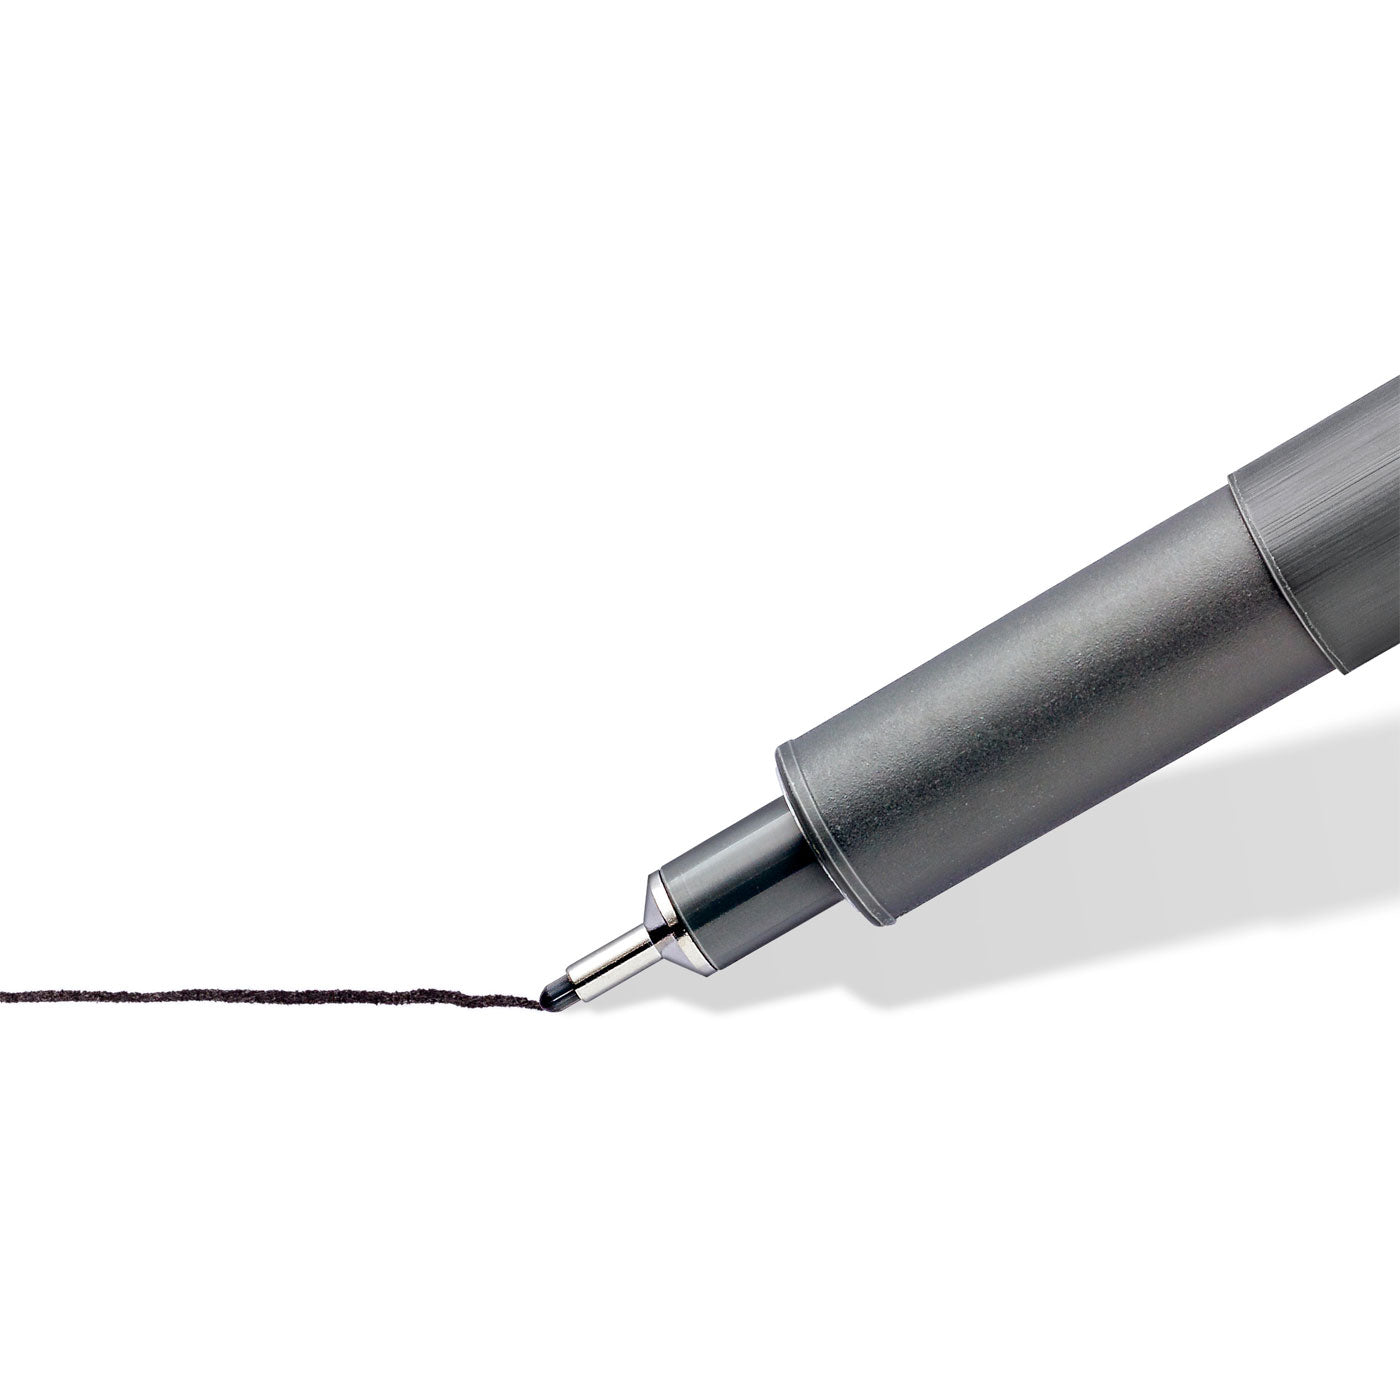 Staedtler Marsgraphic Fineliner Pigment Ink Pen Black Pack 4 [0.1mm, 0.3mm, 0.5mm, 0.7mm]